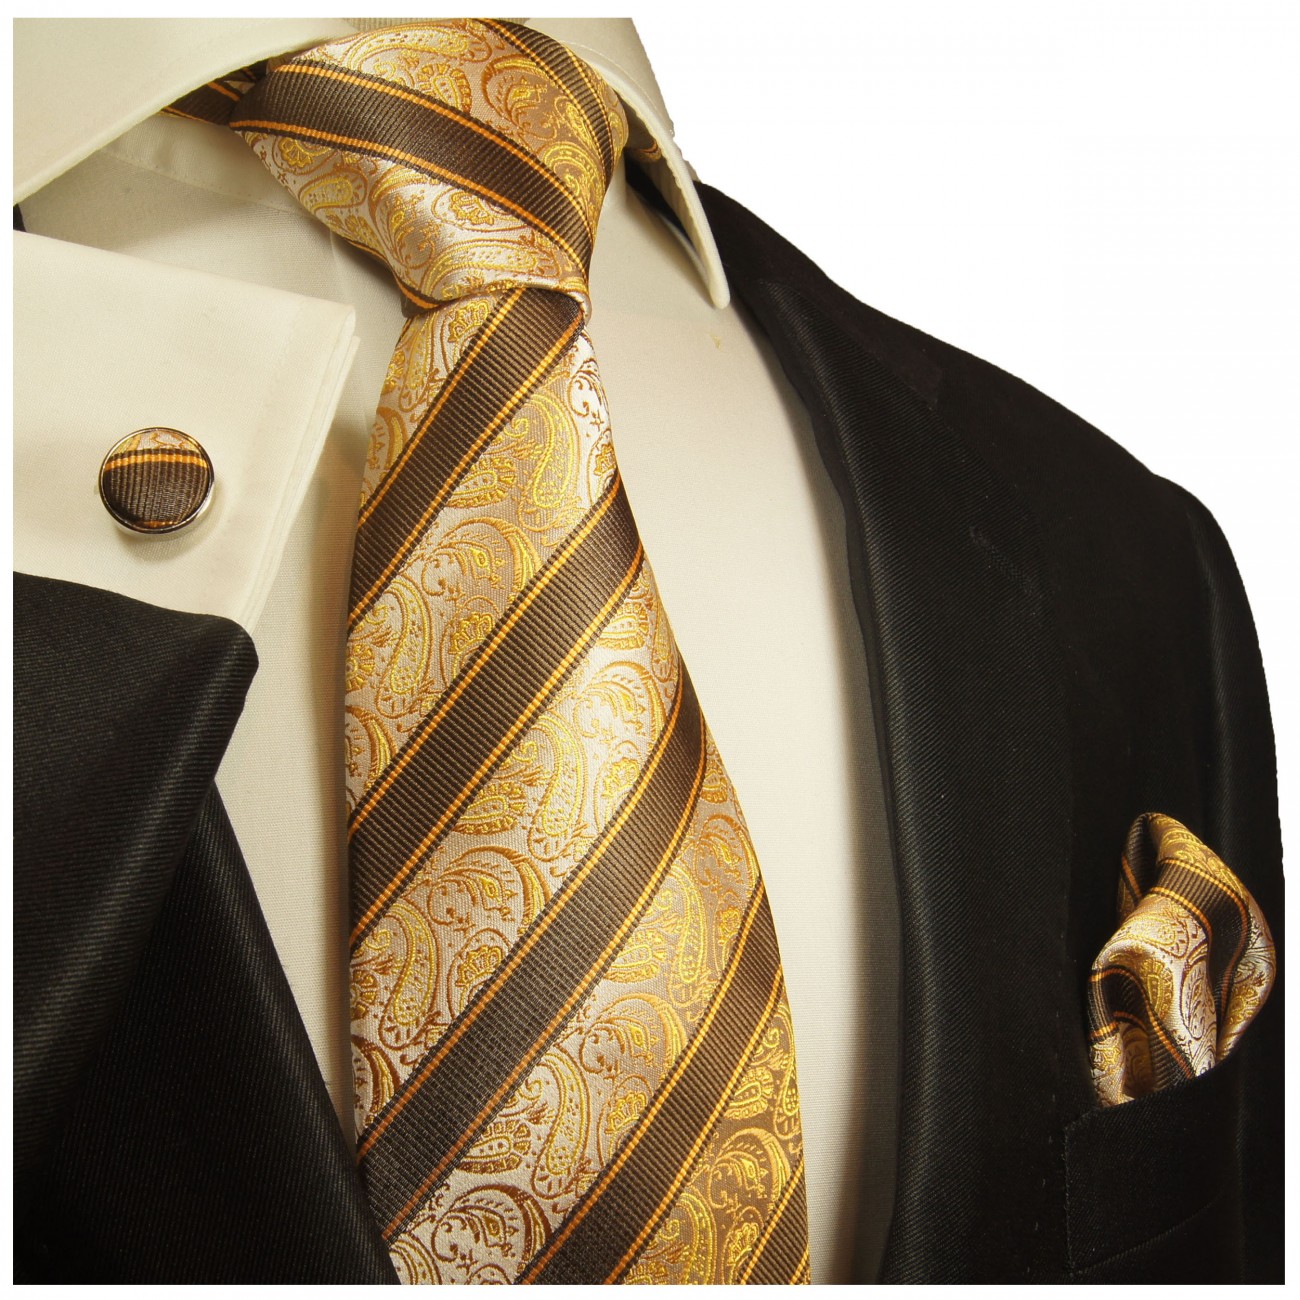 Krawatte braun gold gestreift Seidenkrawatte - Seide - Krawatte mit Einstecktuch und Manschettenknöpfe